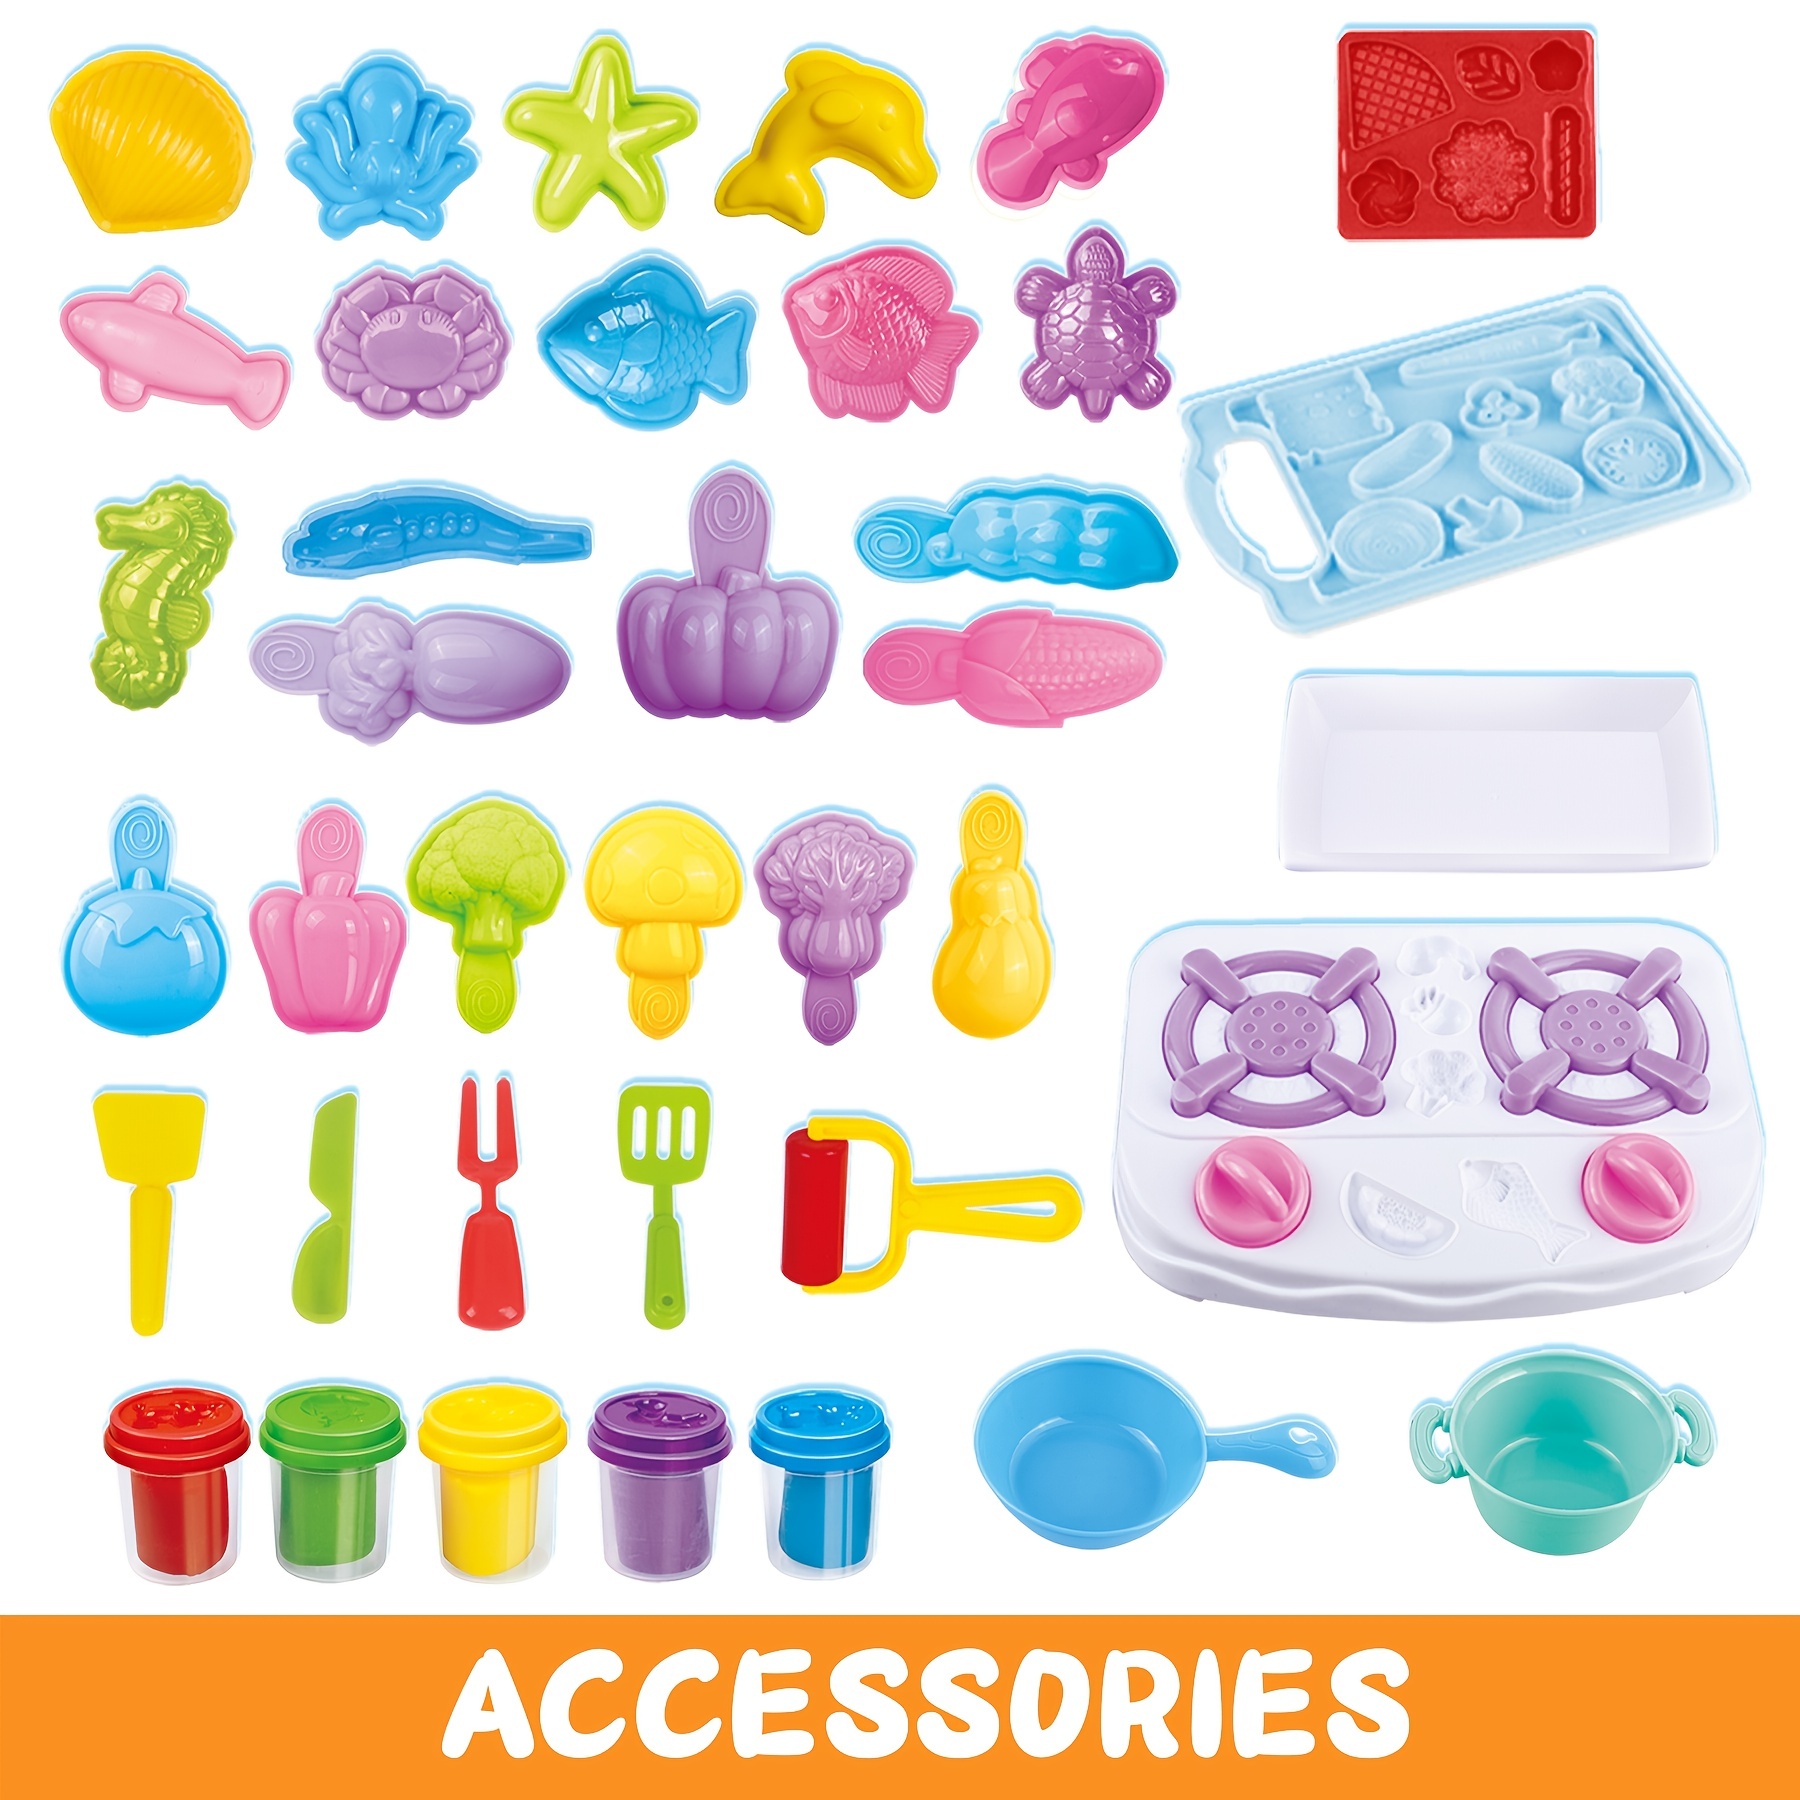  Color Dough Sets for Kids Ages 4-8, Kitchen Color